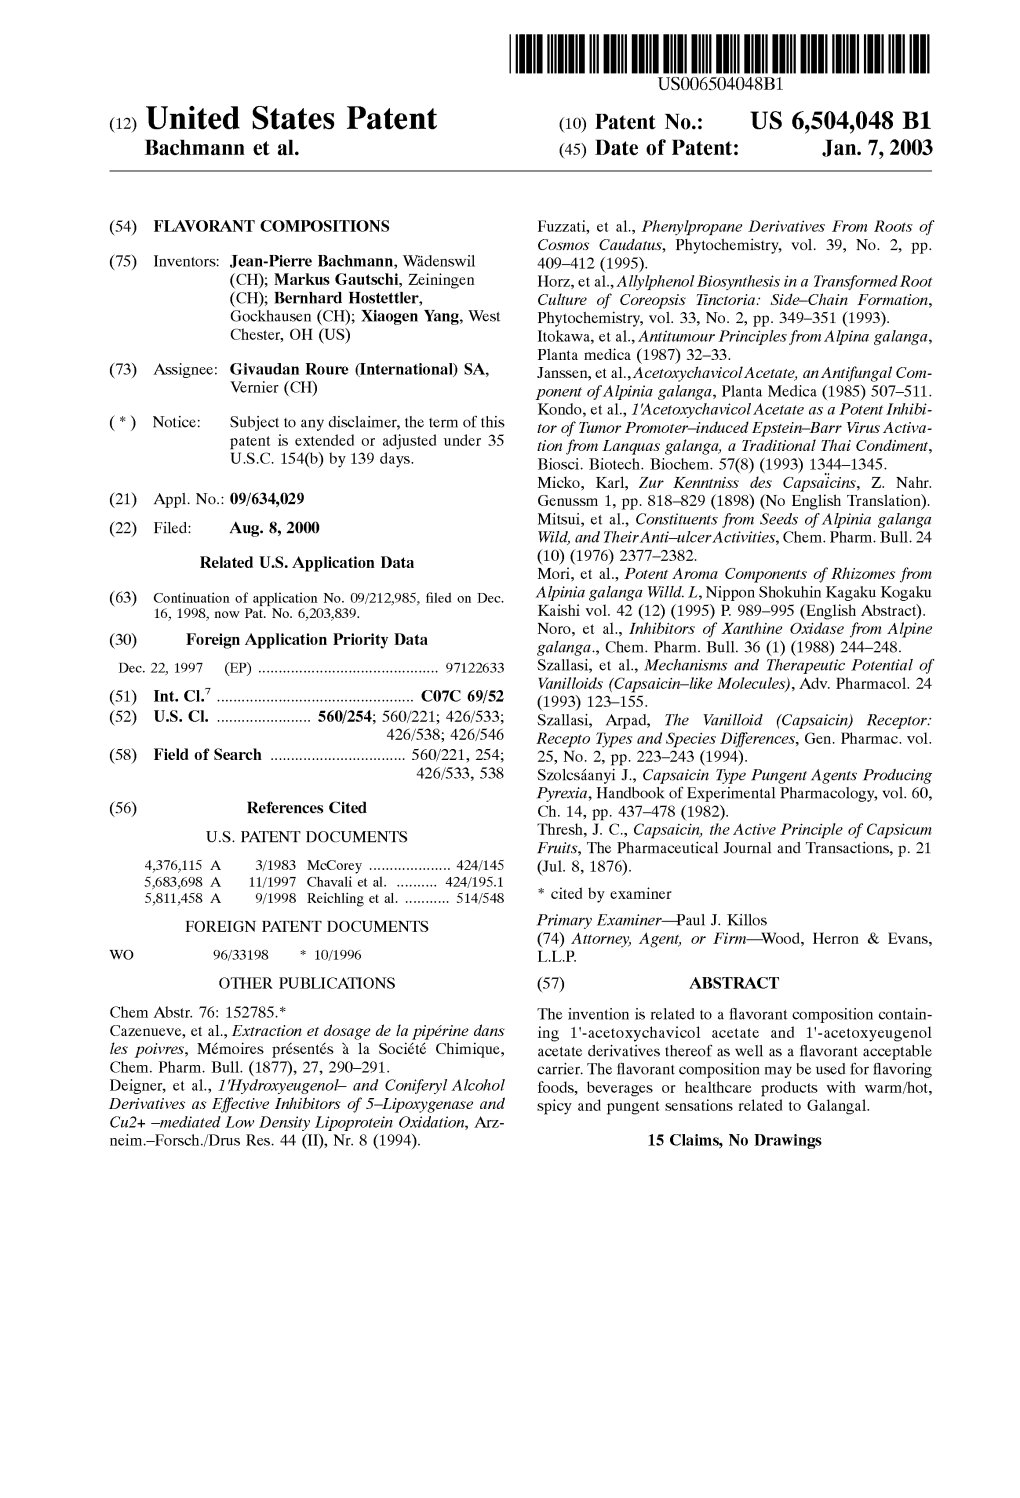 (12) United States Patent (10) Patent No.: US 6,504,048 B1 Bachmann Et Al